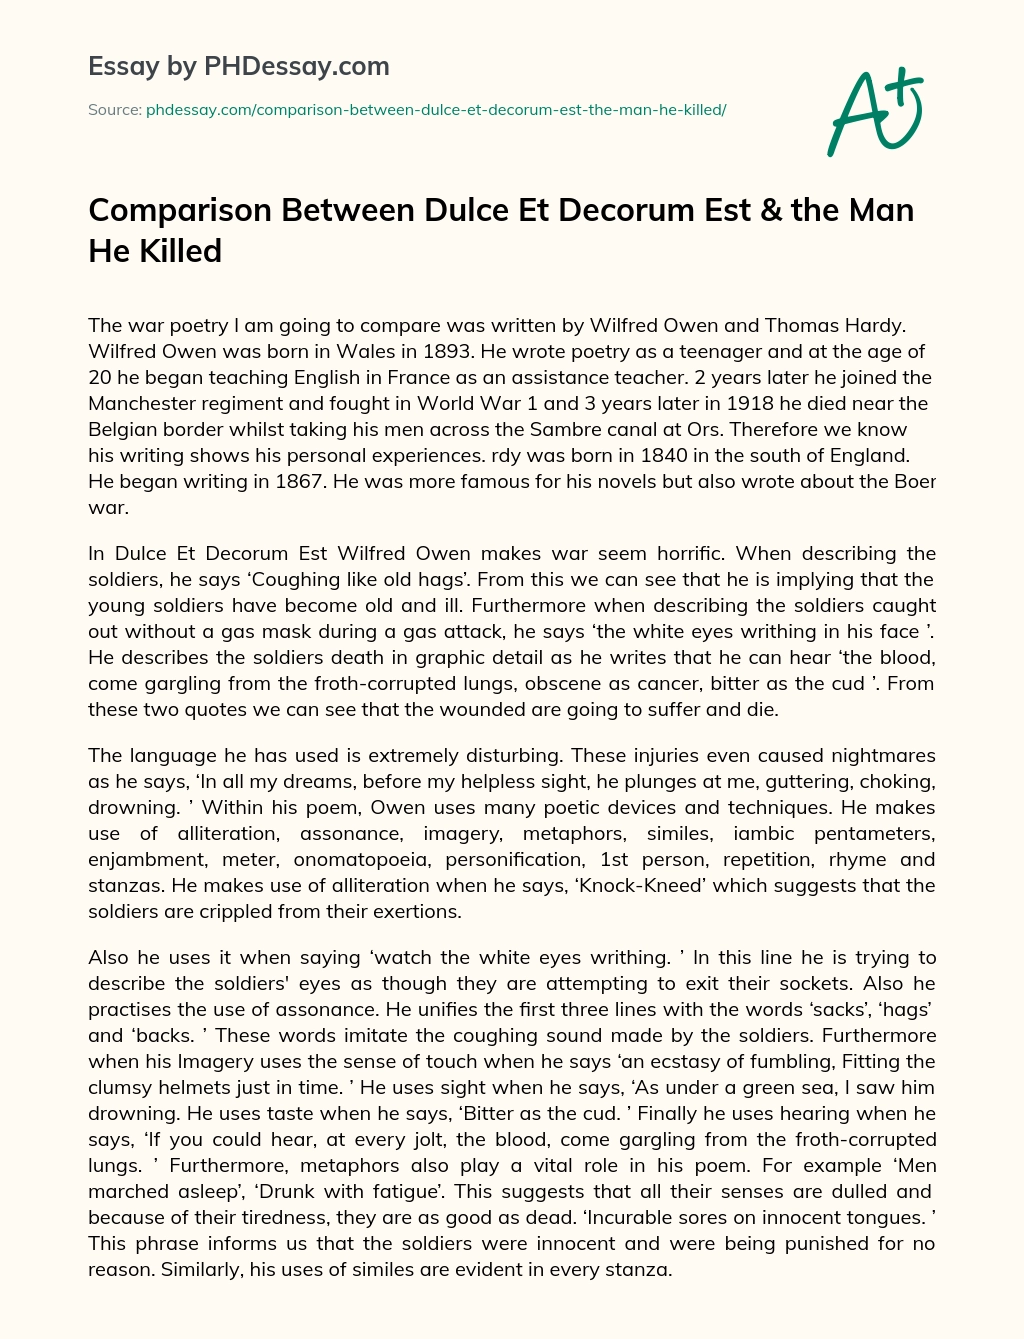 Comparison Between Dulce Et Decorum Est & the Man He Killed essay